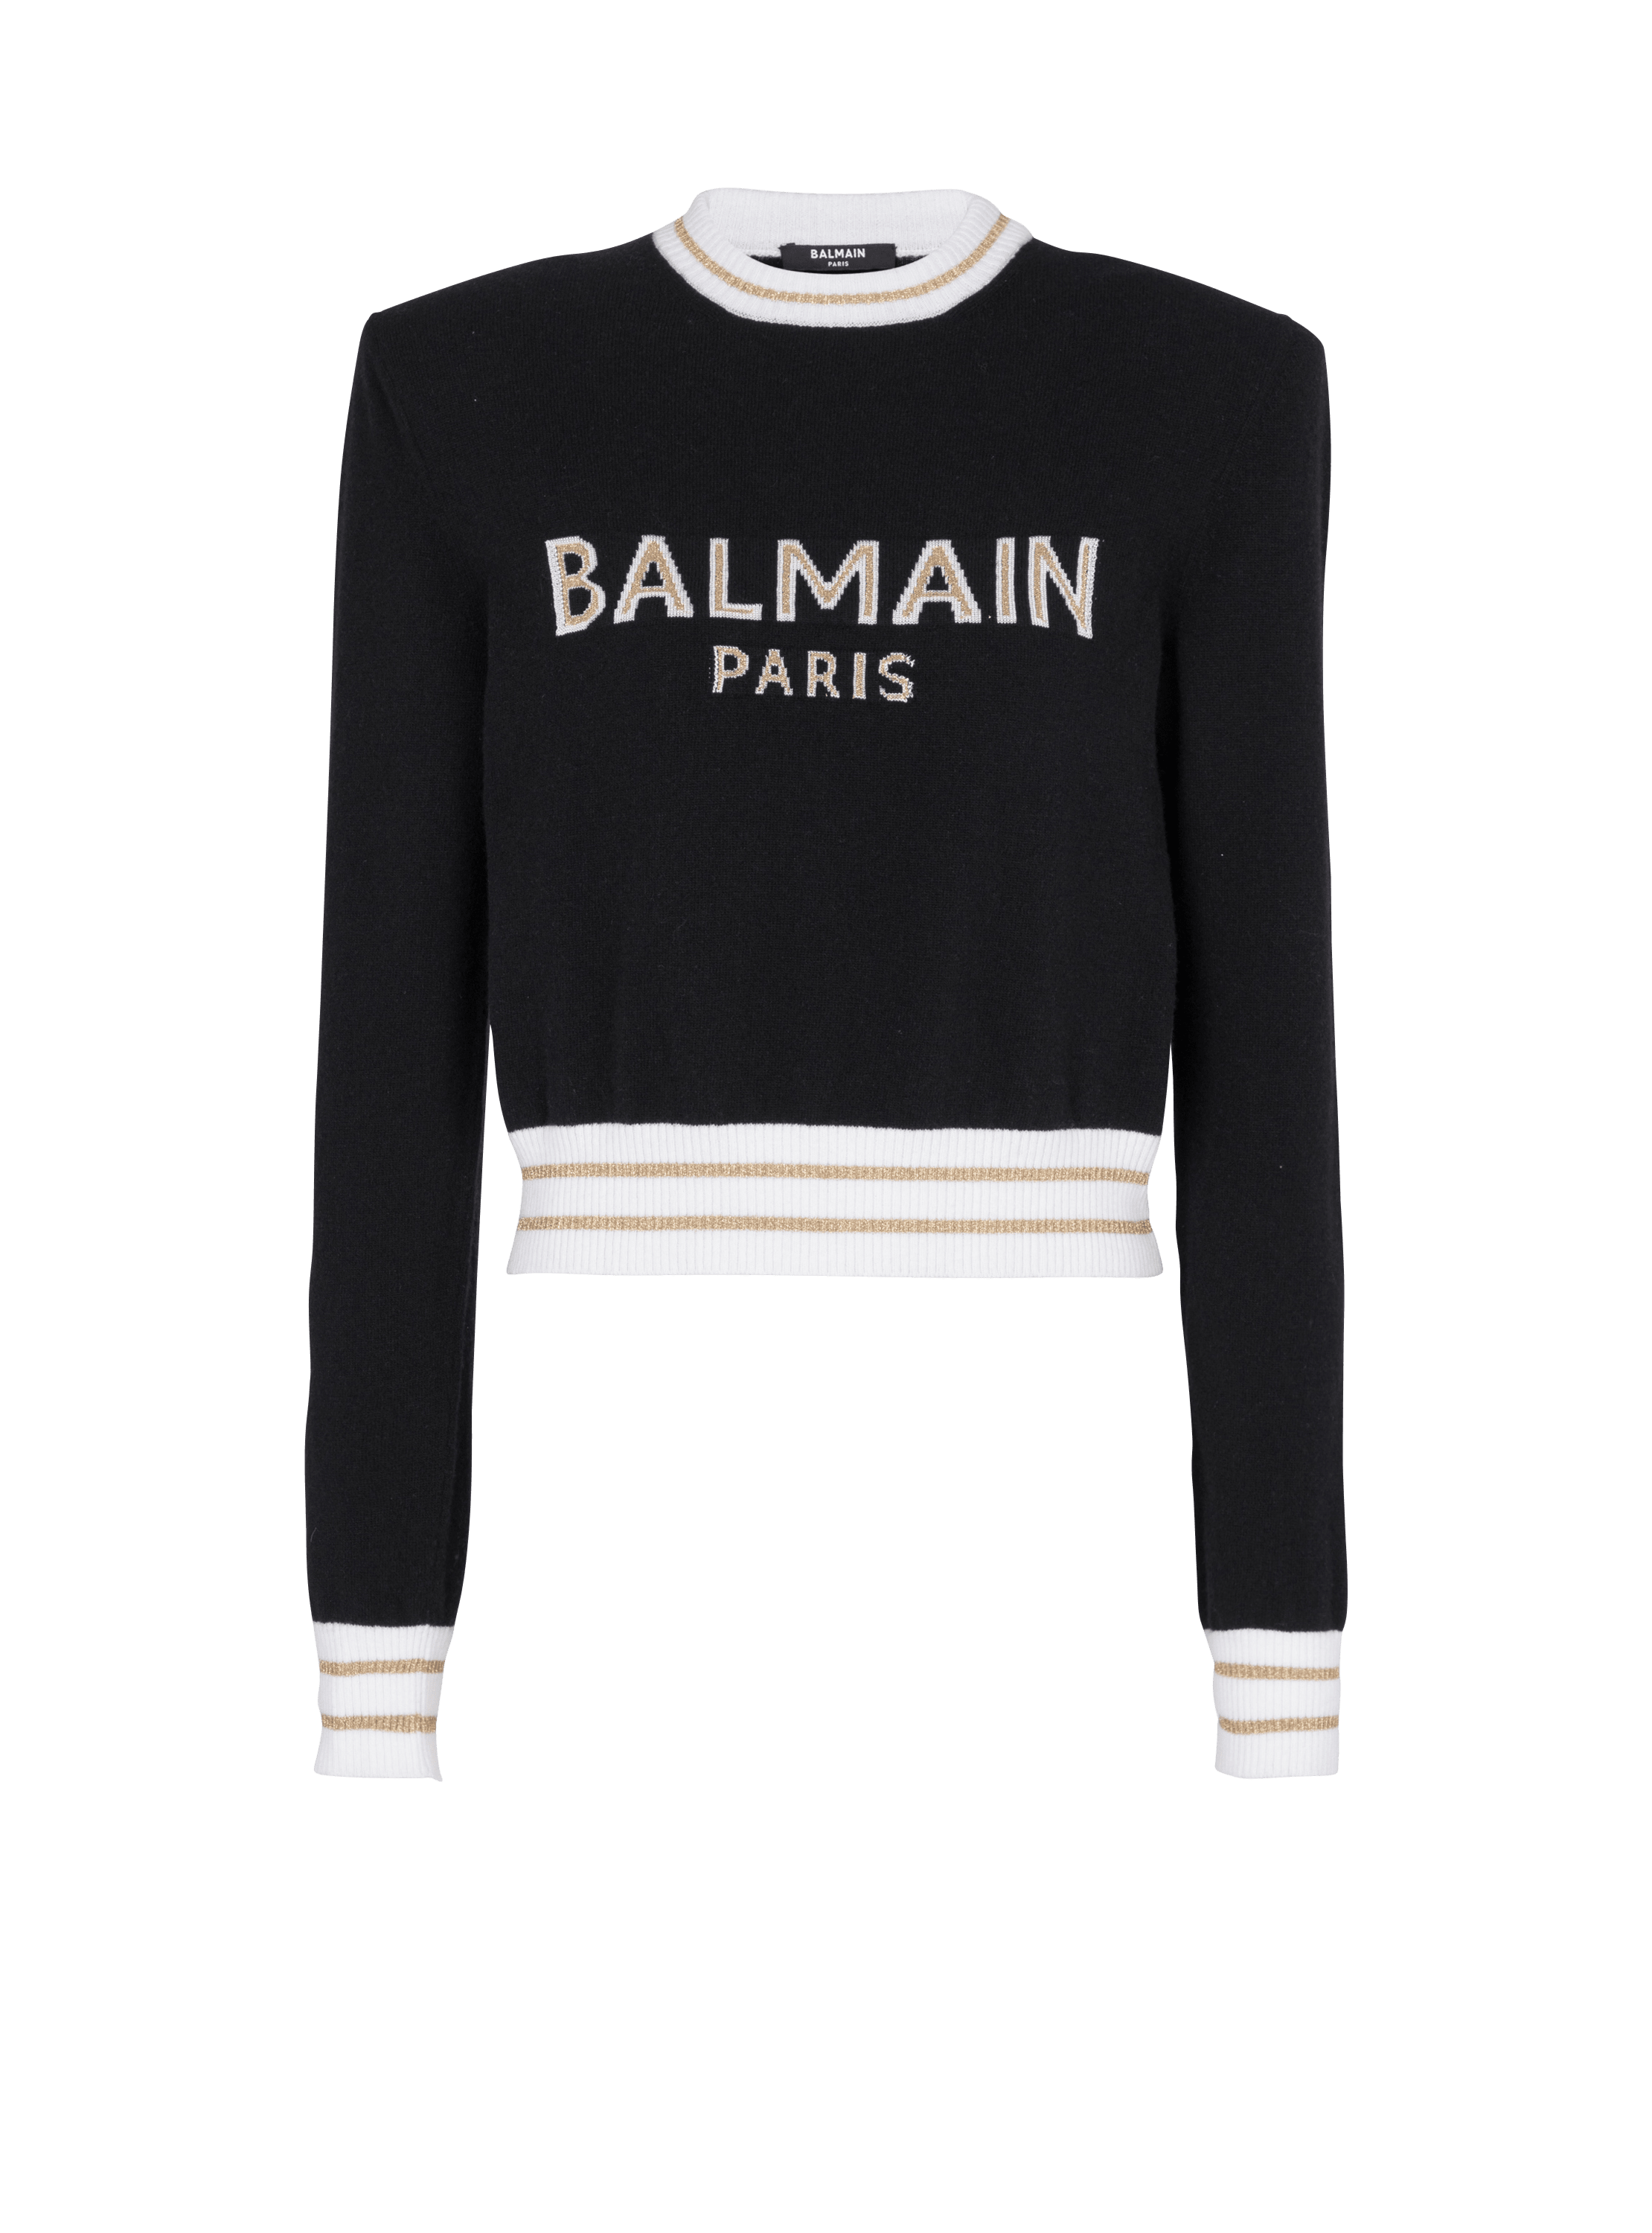 Pierre BALMAIN バルマン カシミア混 デザイン 総柄ニットセーター 